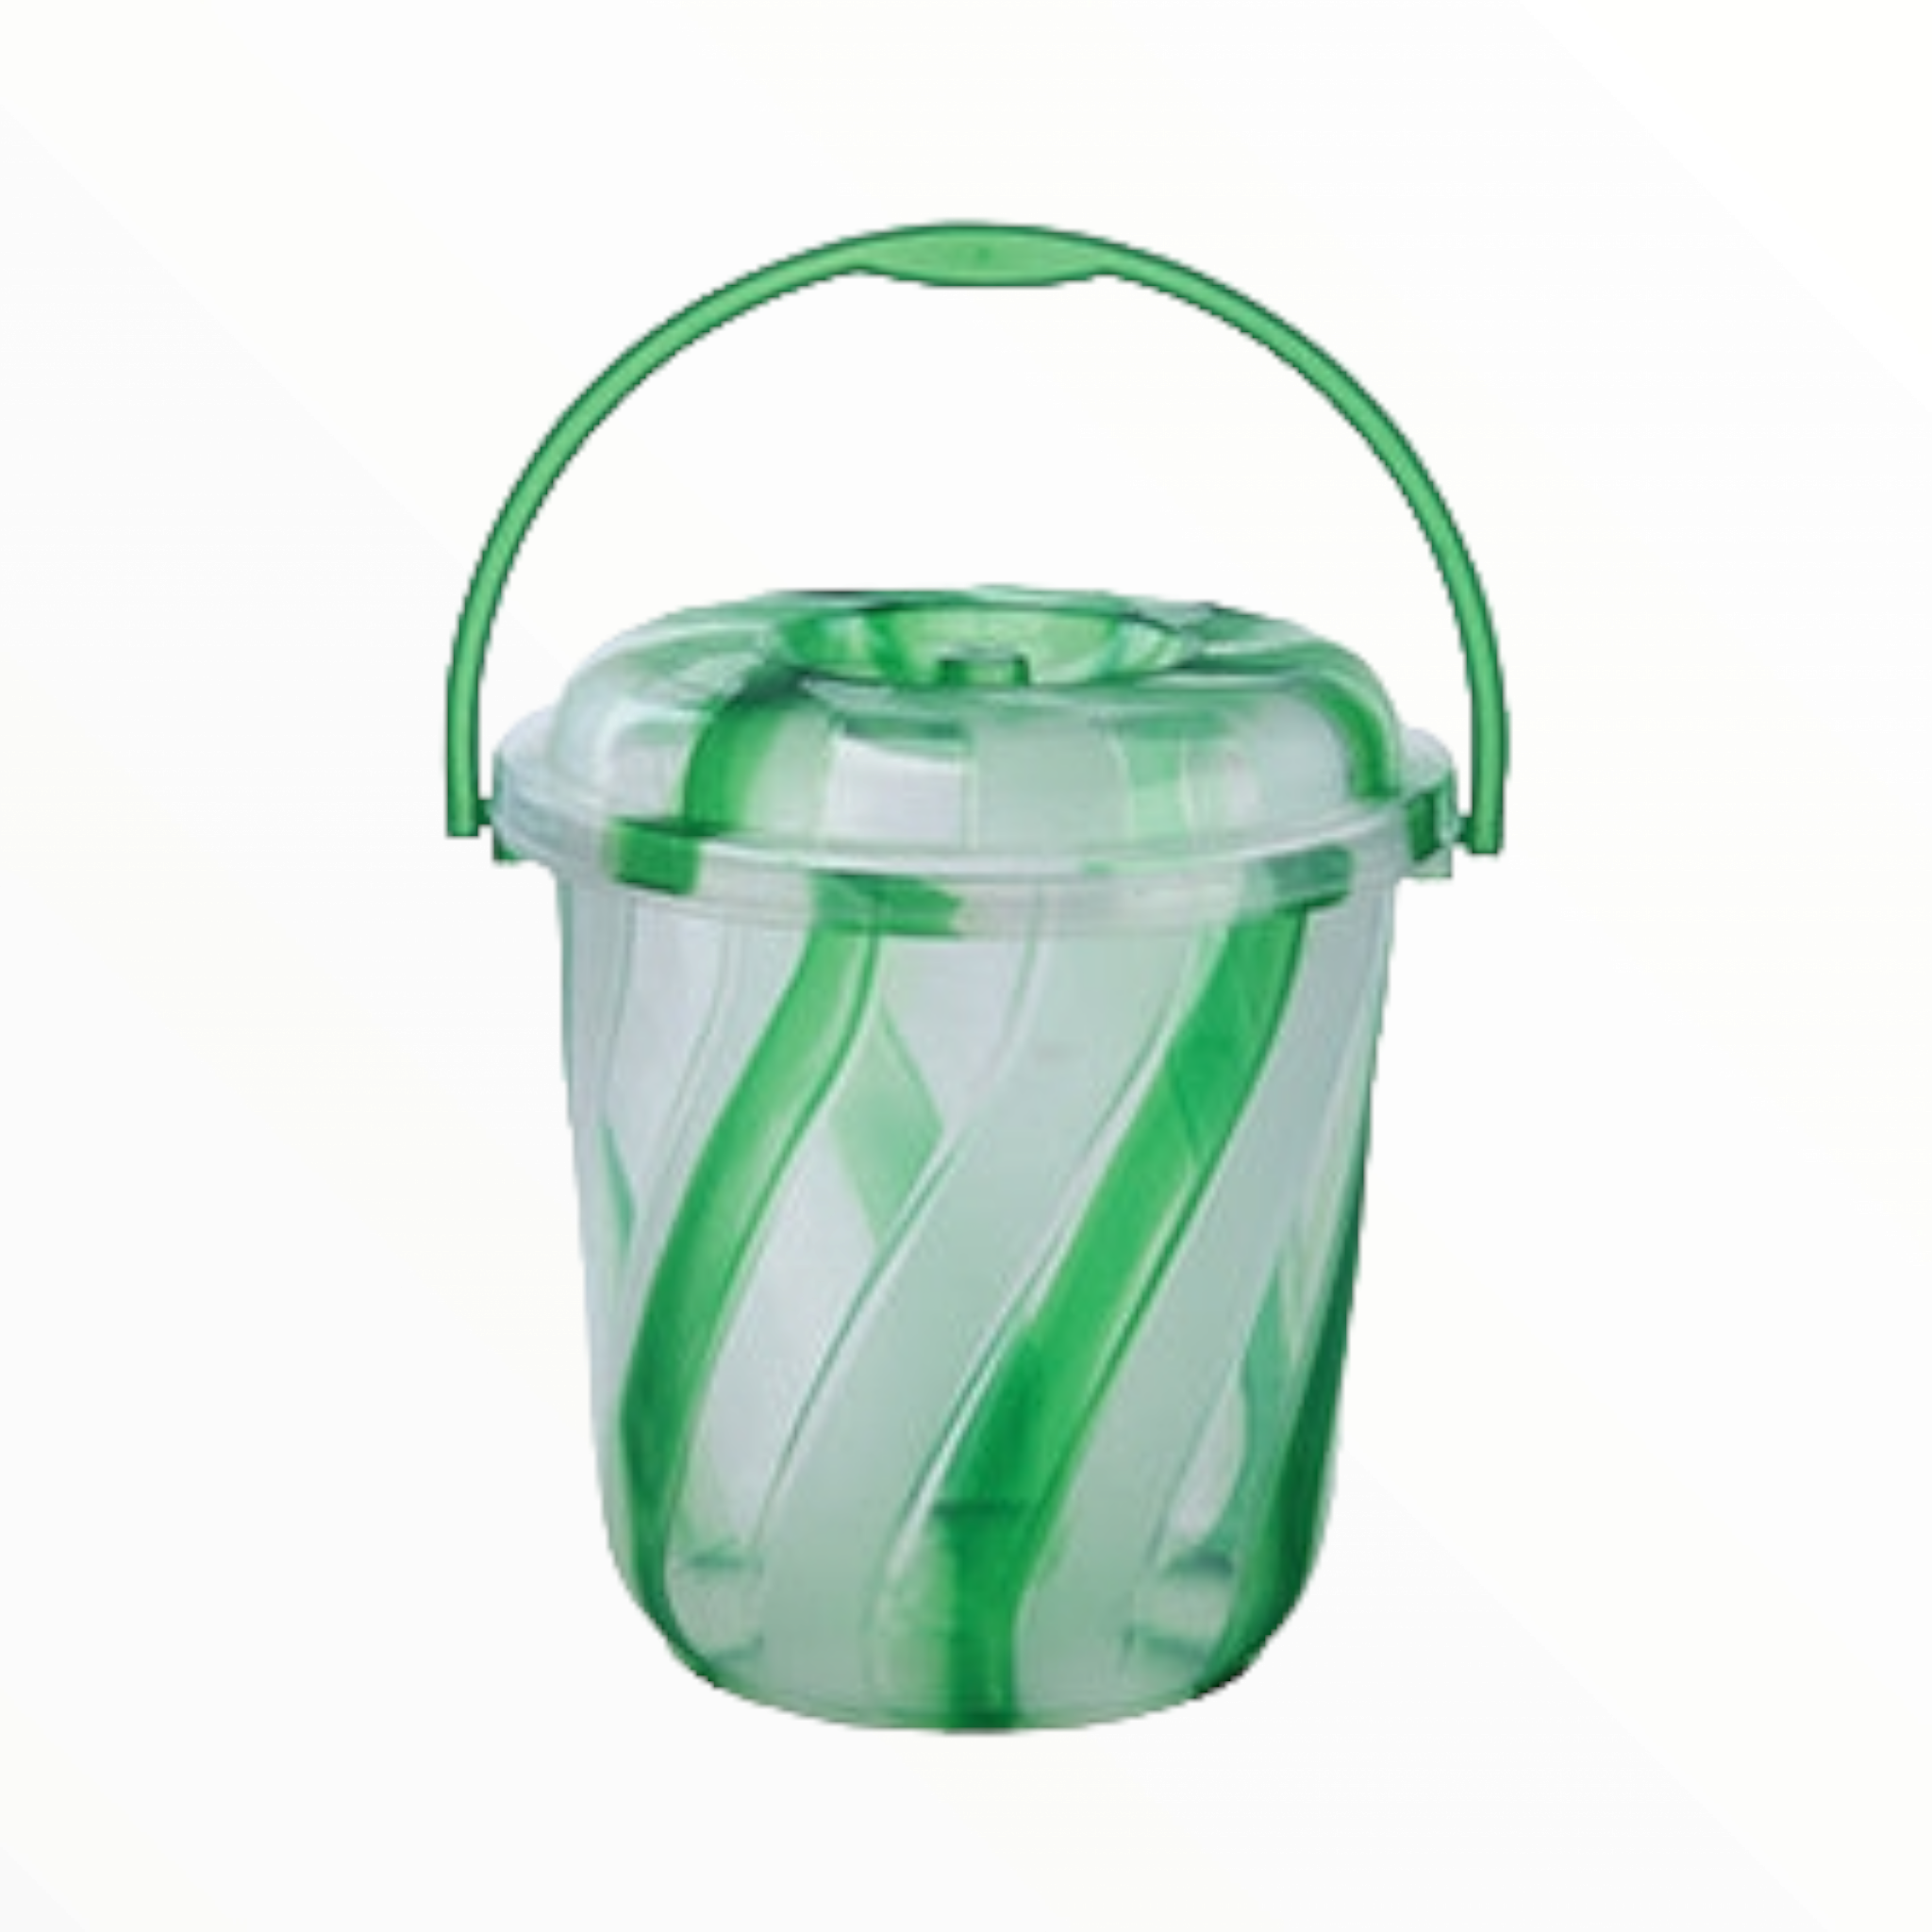 16L Plastic Bucket 2 Tone Colour with Lid 1016D